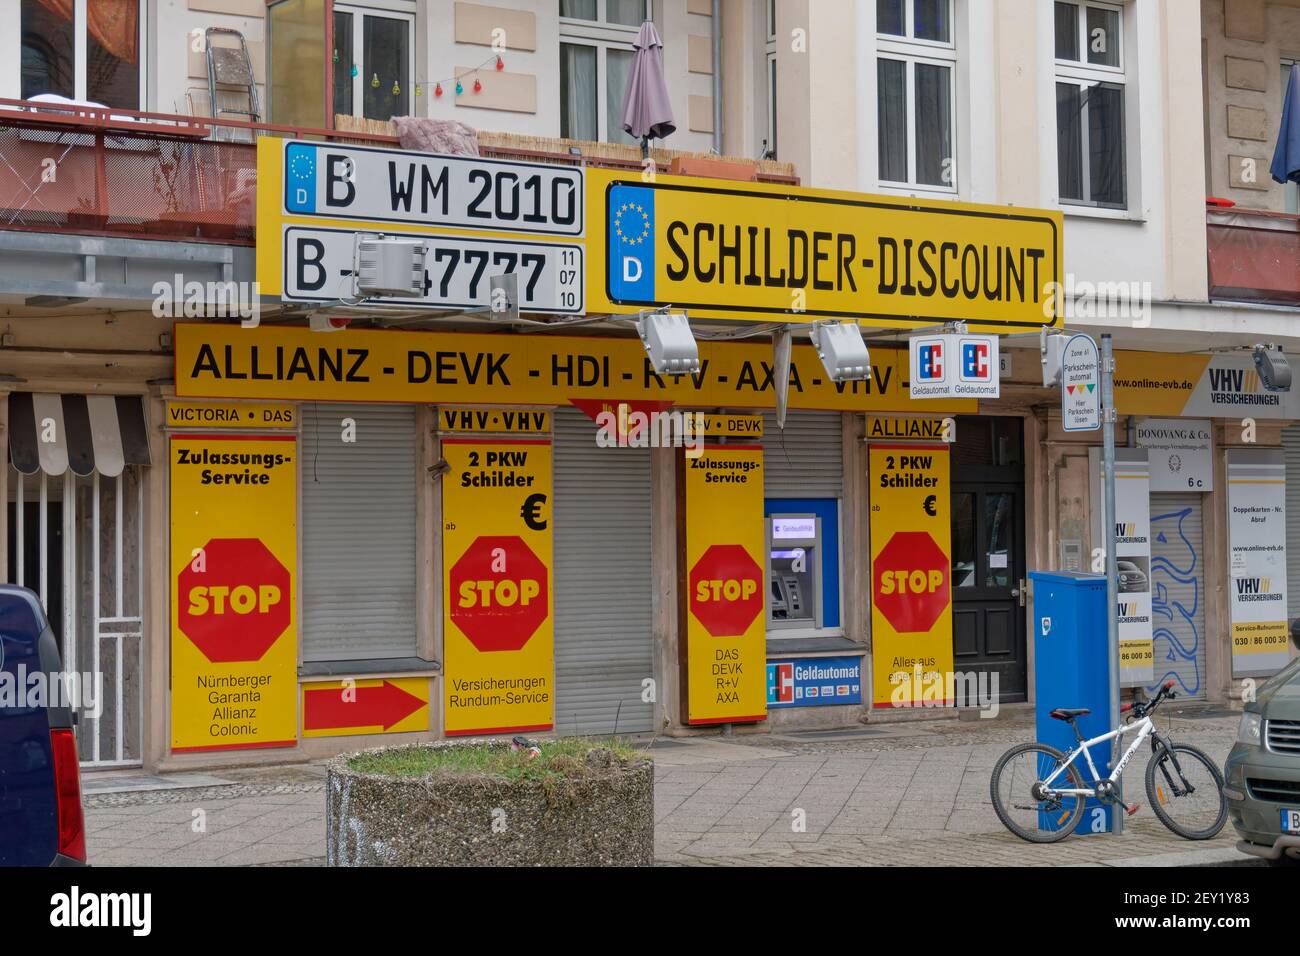 KFZ Zulassungsservice, KFZ-Schilder, KFZ-Versicherungen, Jueterborger Strasse, Kreuzberg, Berlin, Deutschland Stock Photo